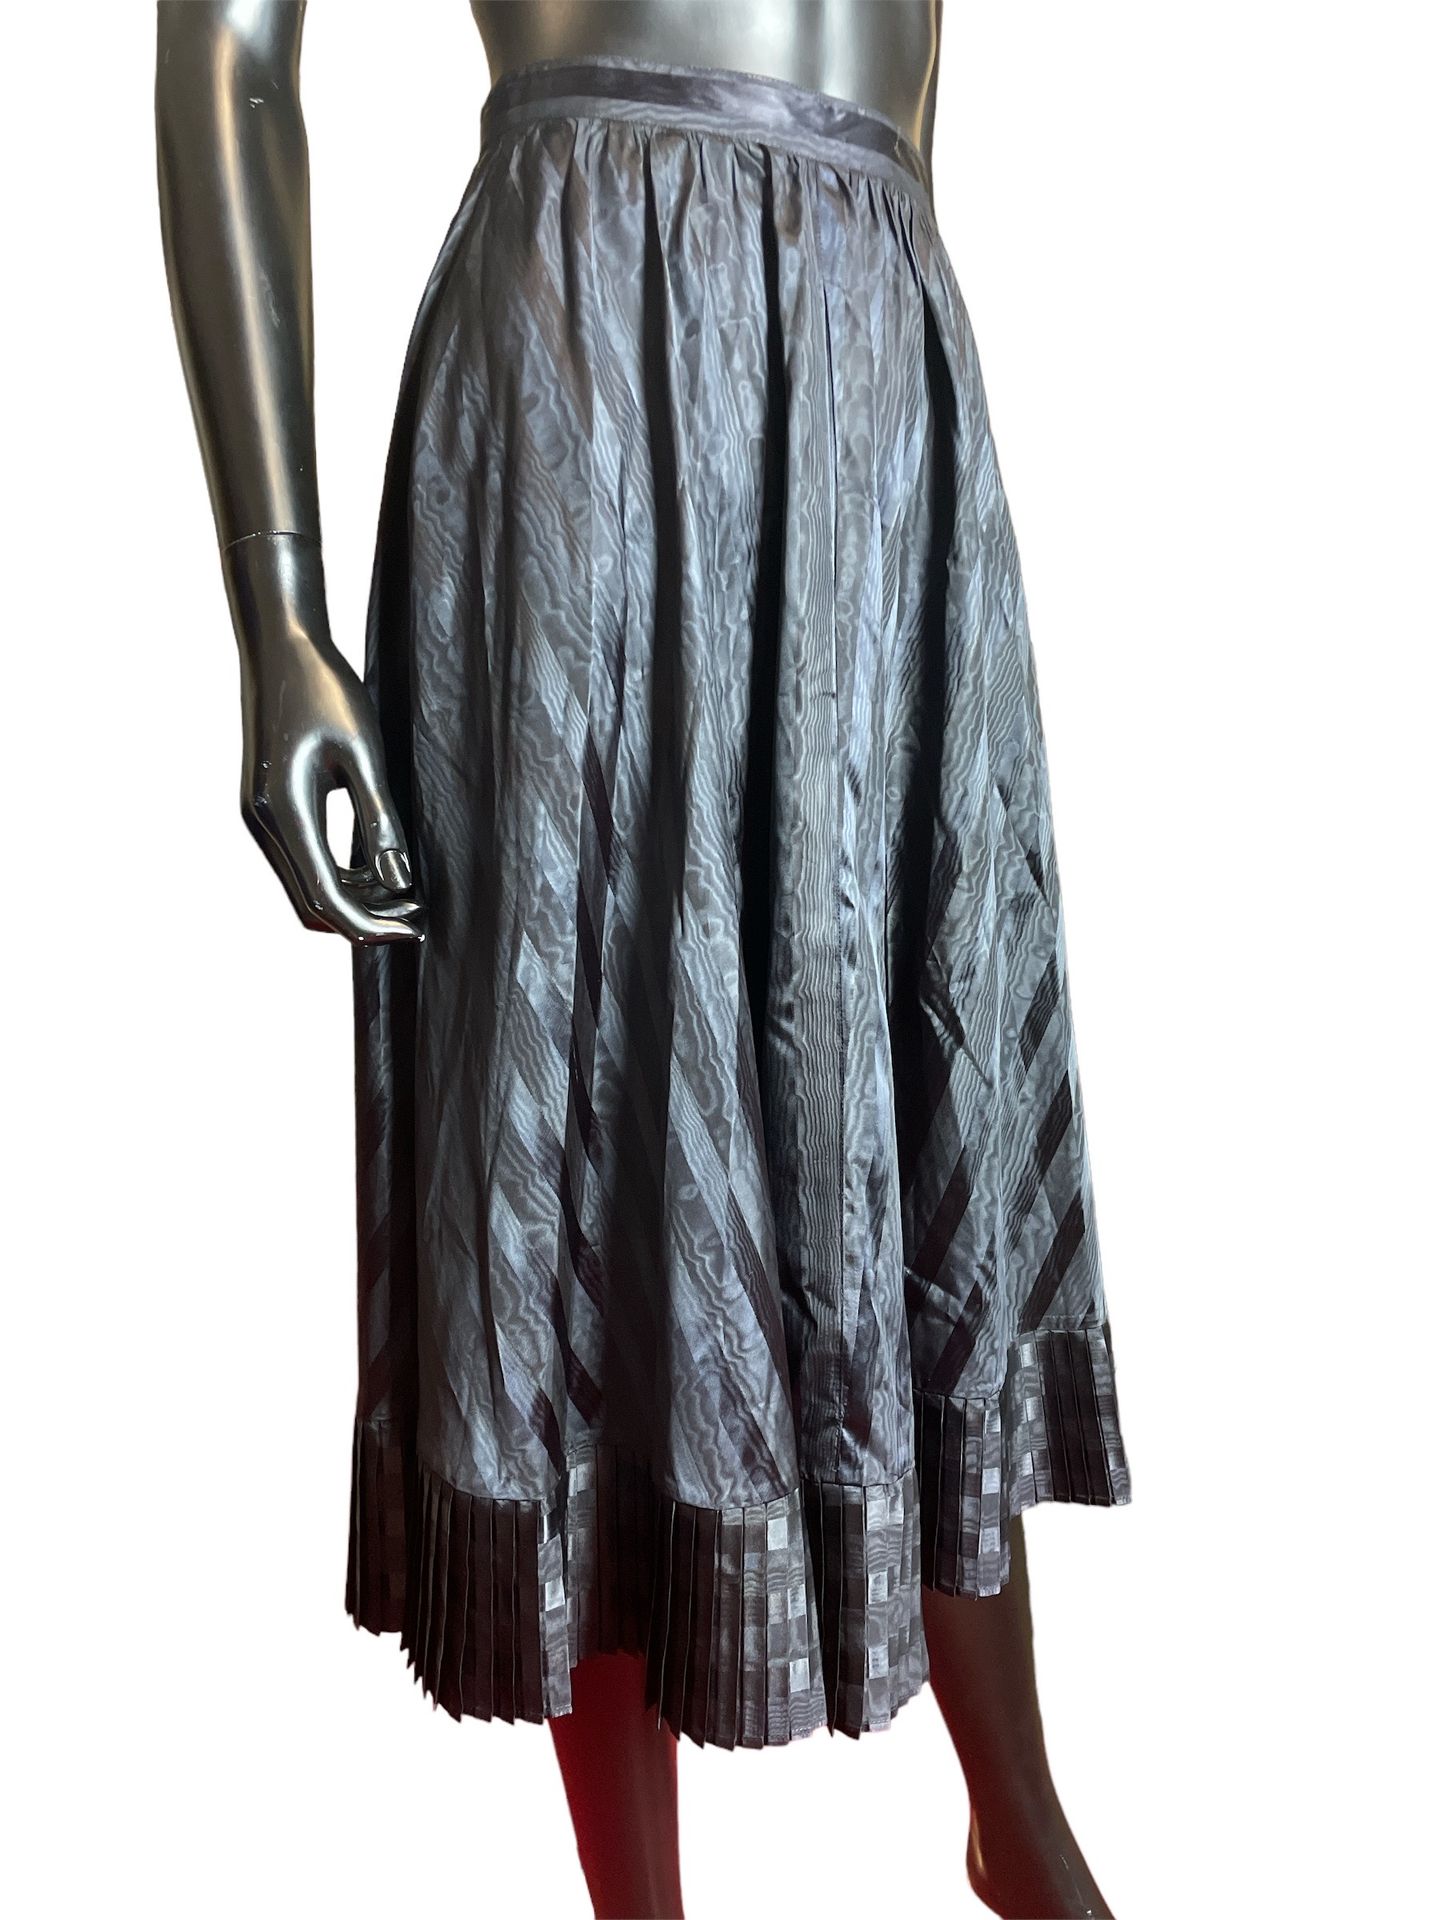 Null 卡查里尔 
虹彩条纹面料的黑色长裙，底部有褶皱飘带 
T : 36 
(条件非常好)